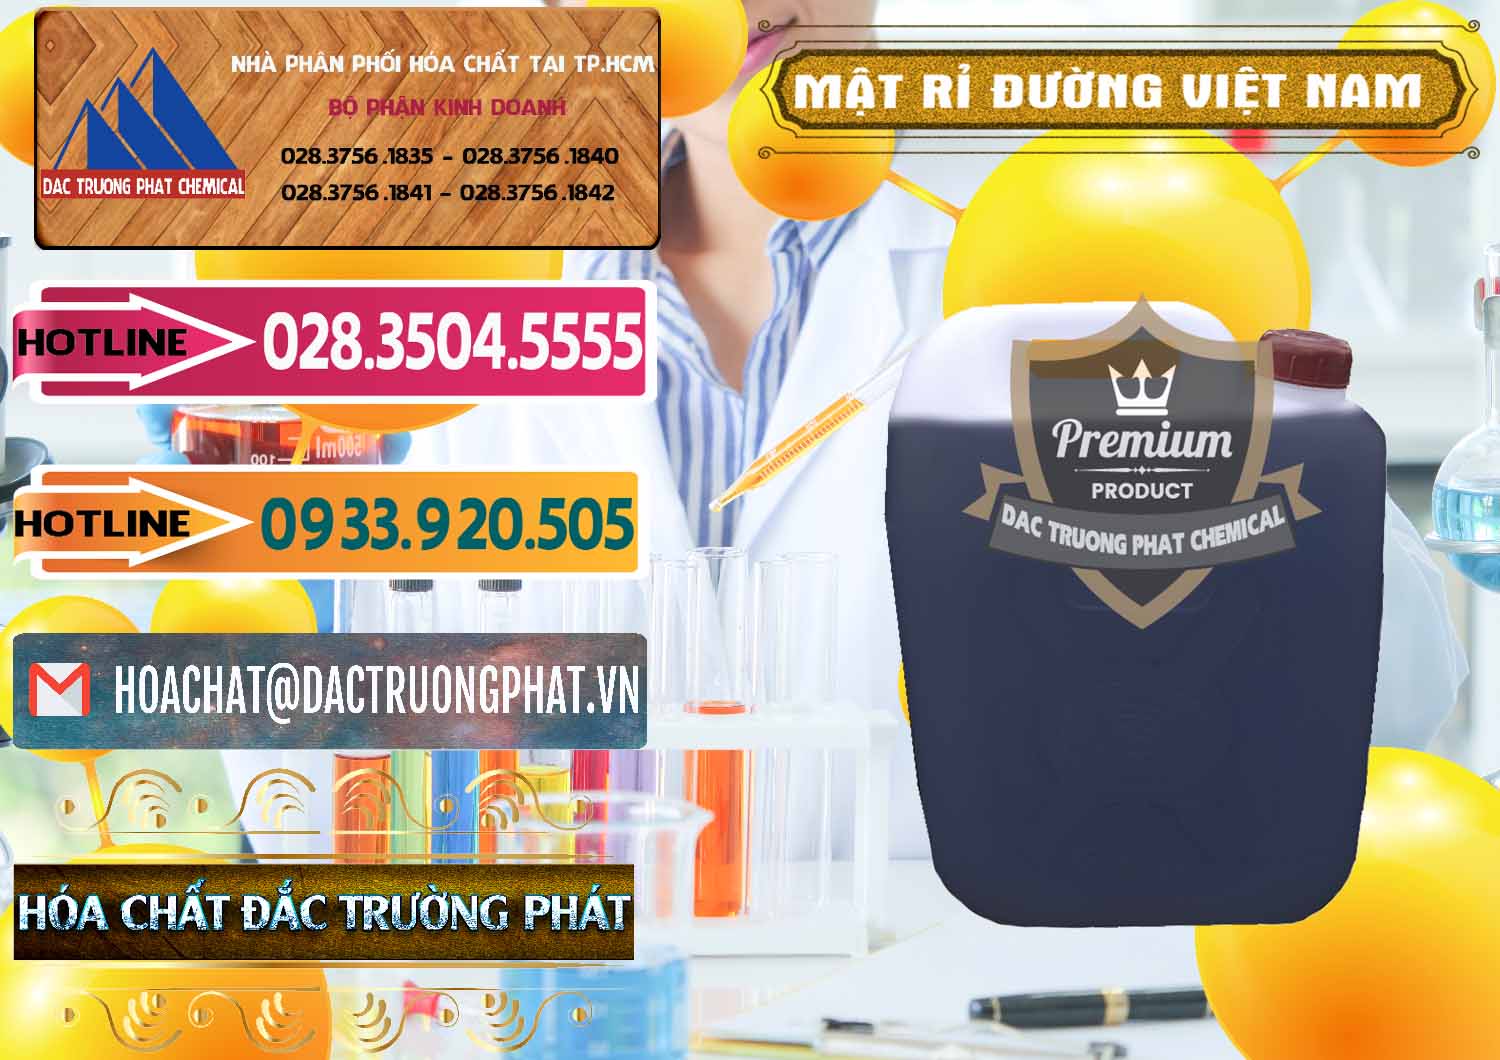 Nhà cung cấp & bán Mật Rỉ Đường Việt Nam - 0306 - Công ty chuyên cung cấp - kinh doanh hóa chất tại TP.HCM - dactruongphat.vn